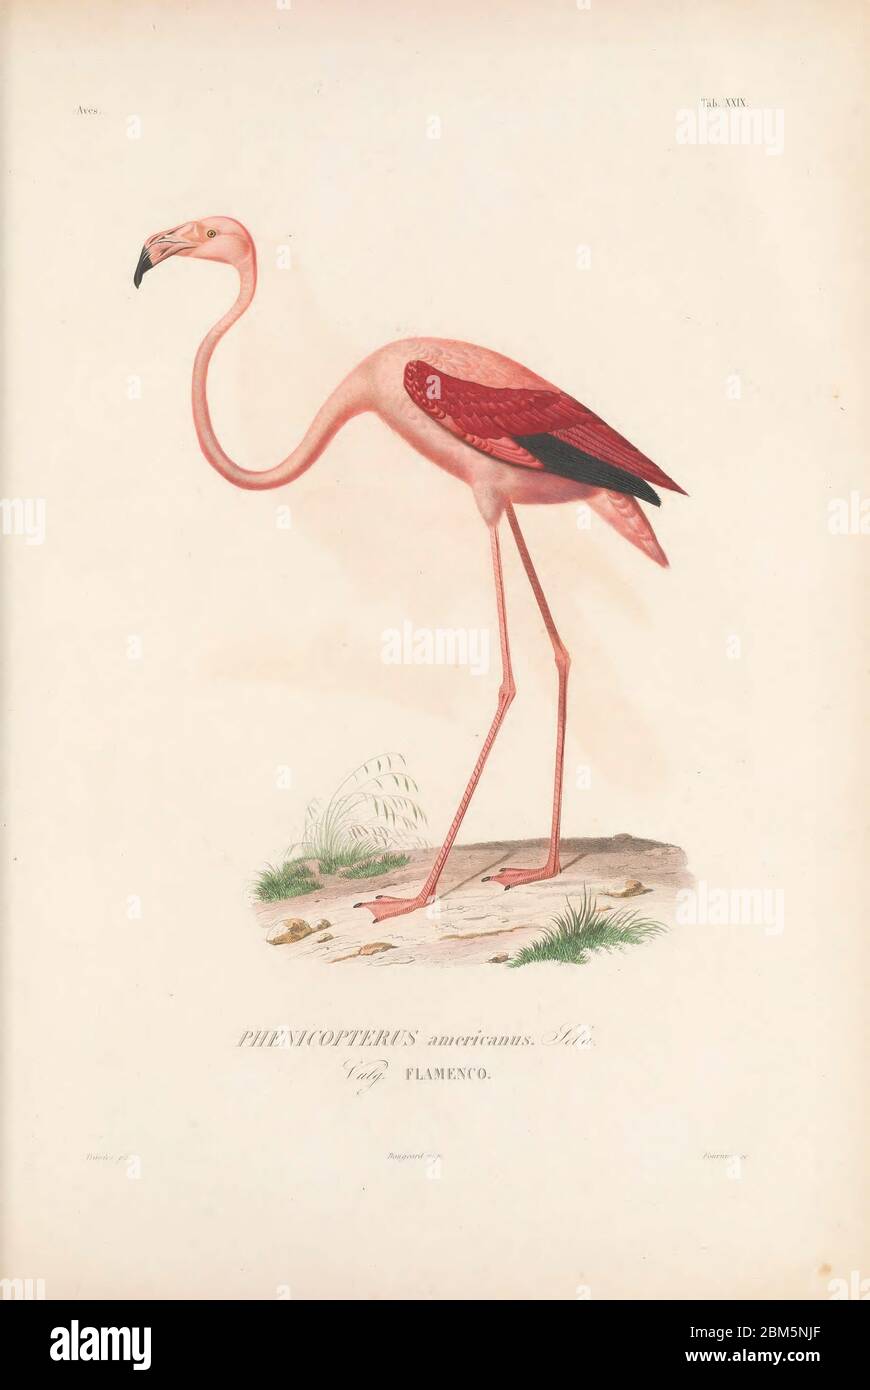 Birds of Cube 1838 amerikanische Flamingos (Phoenicopterus ruber [hier als Phoenicopterus americanus]). Der amerikanische (oder karibische) Flamingo ist ein großer Watvogel, der Seen und Küstengewässer in Teilen Süd- und Mittelamerikas bewohnt. Es ernährt sich, indem es seine große Schnabel in das Wasser eintauchen und Garnelen, Pflanzenstoffe und Insekten filtert. Seine rosa Farbe ist auf Pigmente in den Garnelen zurückzuführen, die einen großen Teil seiner Ernährung bilden. Aus dem Buch Histoire physique, politique et naturelle de l'ile de Cuba [physische, politische und natürliche Geschichte der Insel Kuba] von Sagra, Ramón de la, 1798-1871; oder Stockfoto